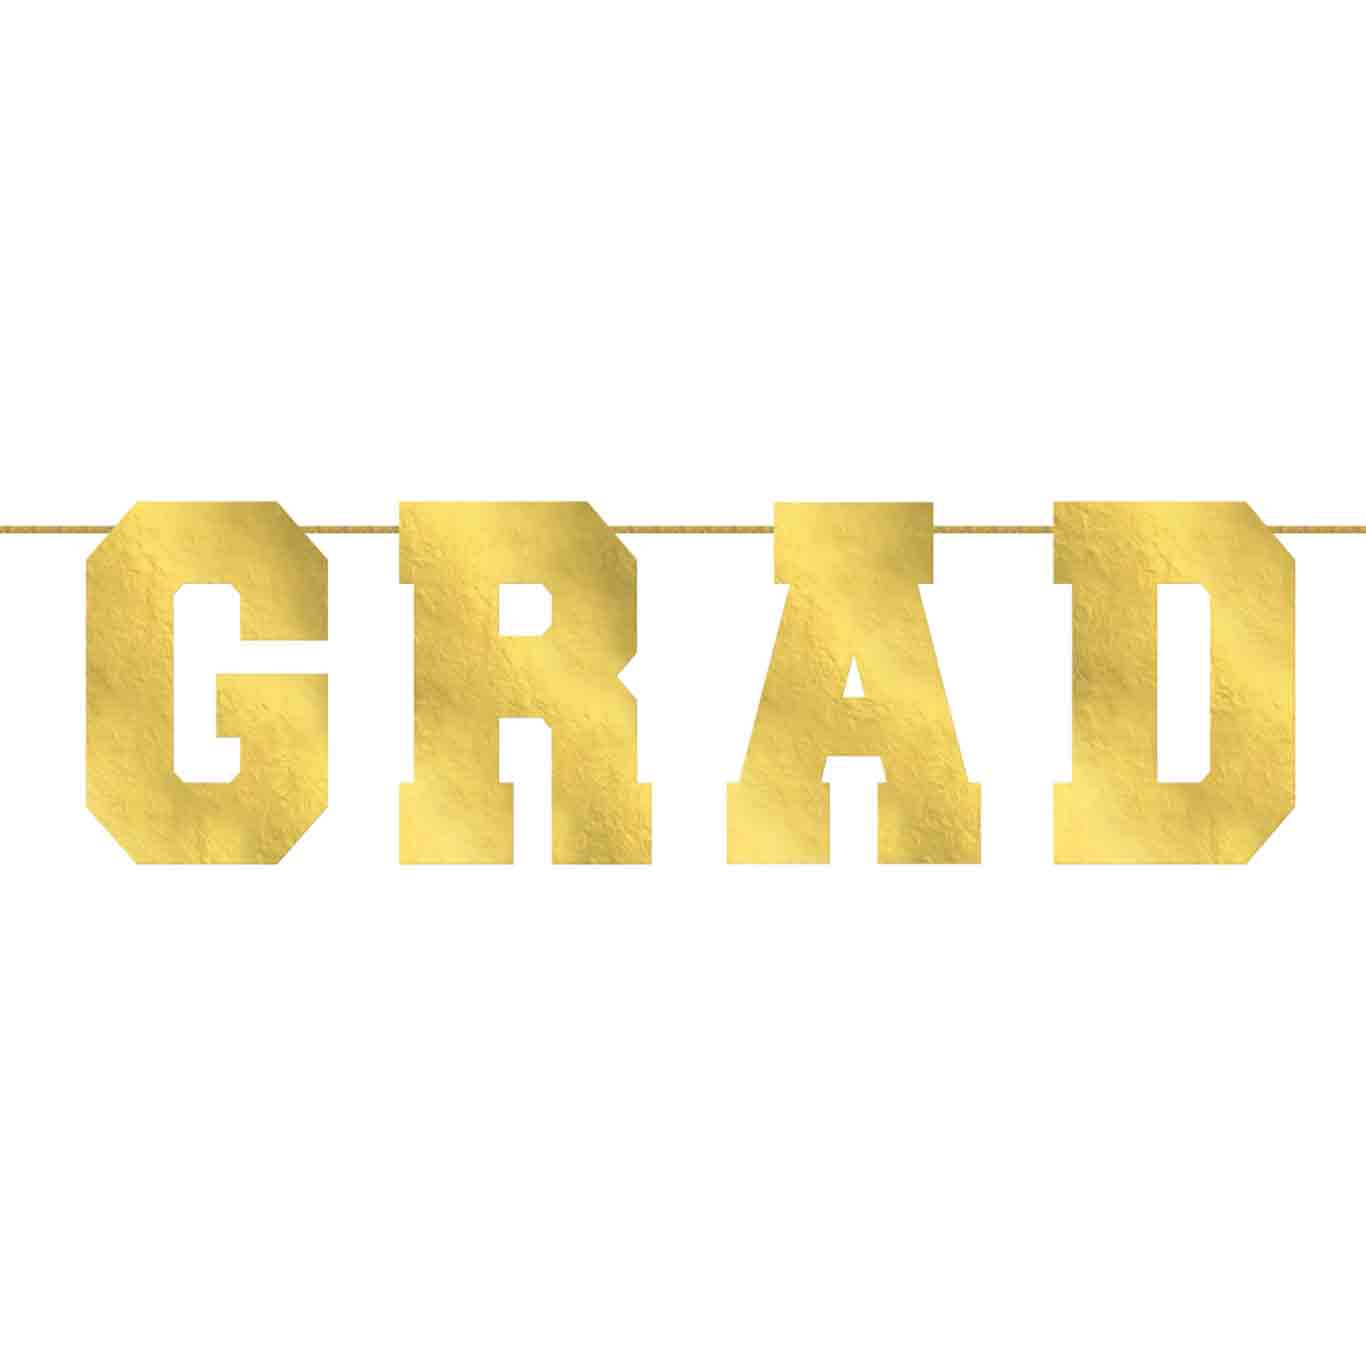 Grad Oversized Collegiate Letter Banner 12ft x 15in